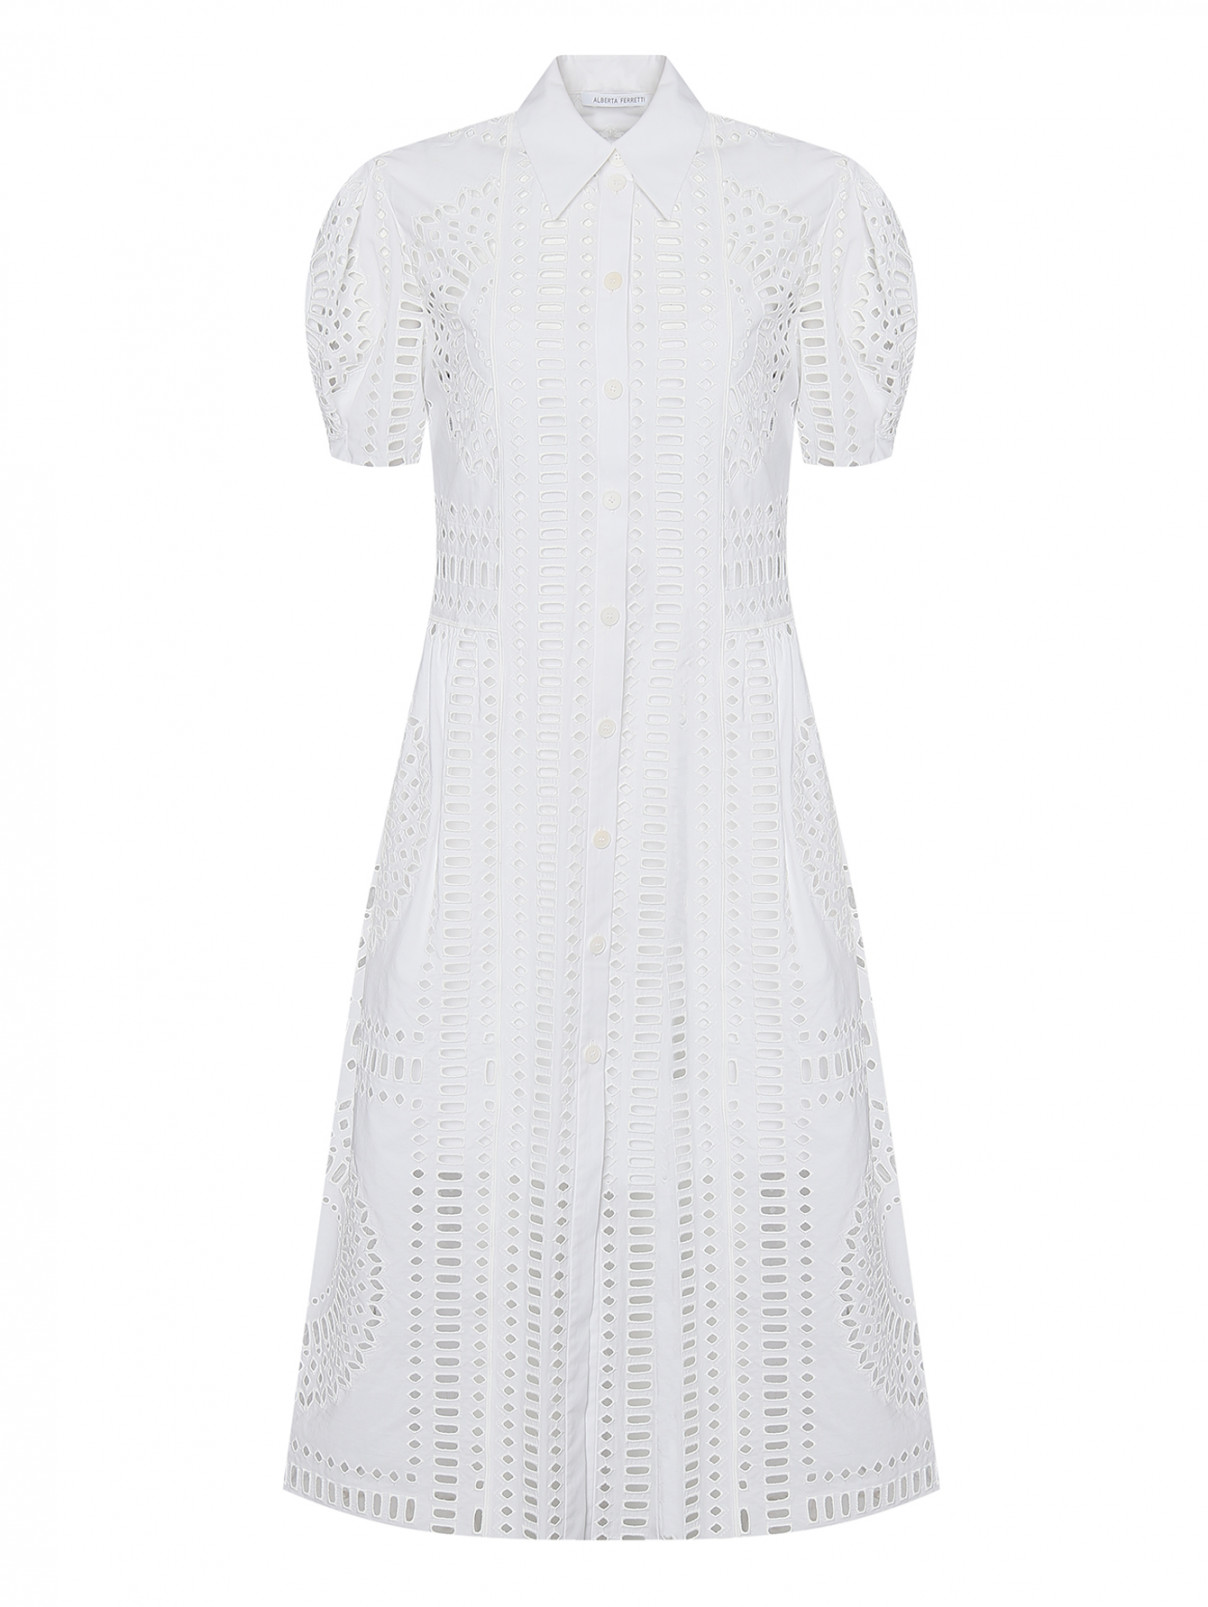 Платье с вышивкой ришелье Alberta Ferretti  –  Общий вид  – Цвет:  Белый